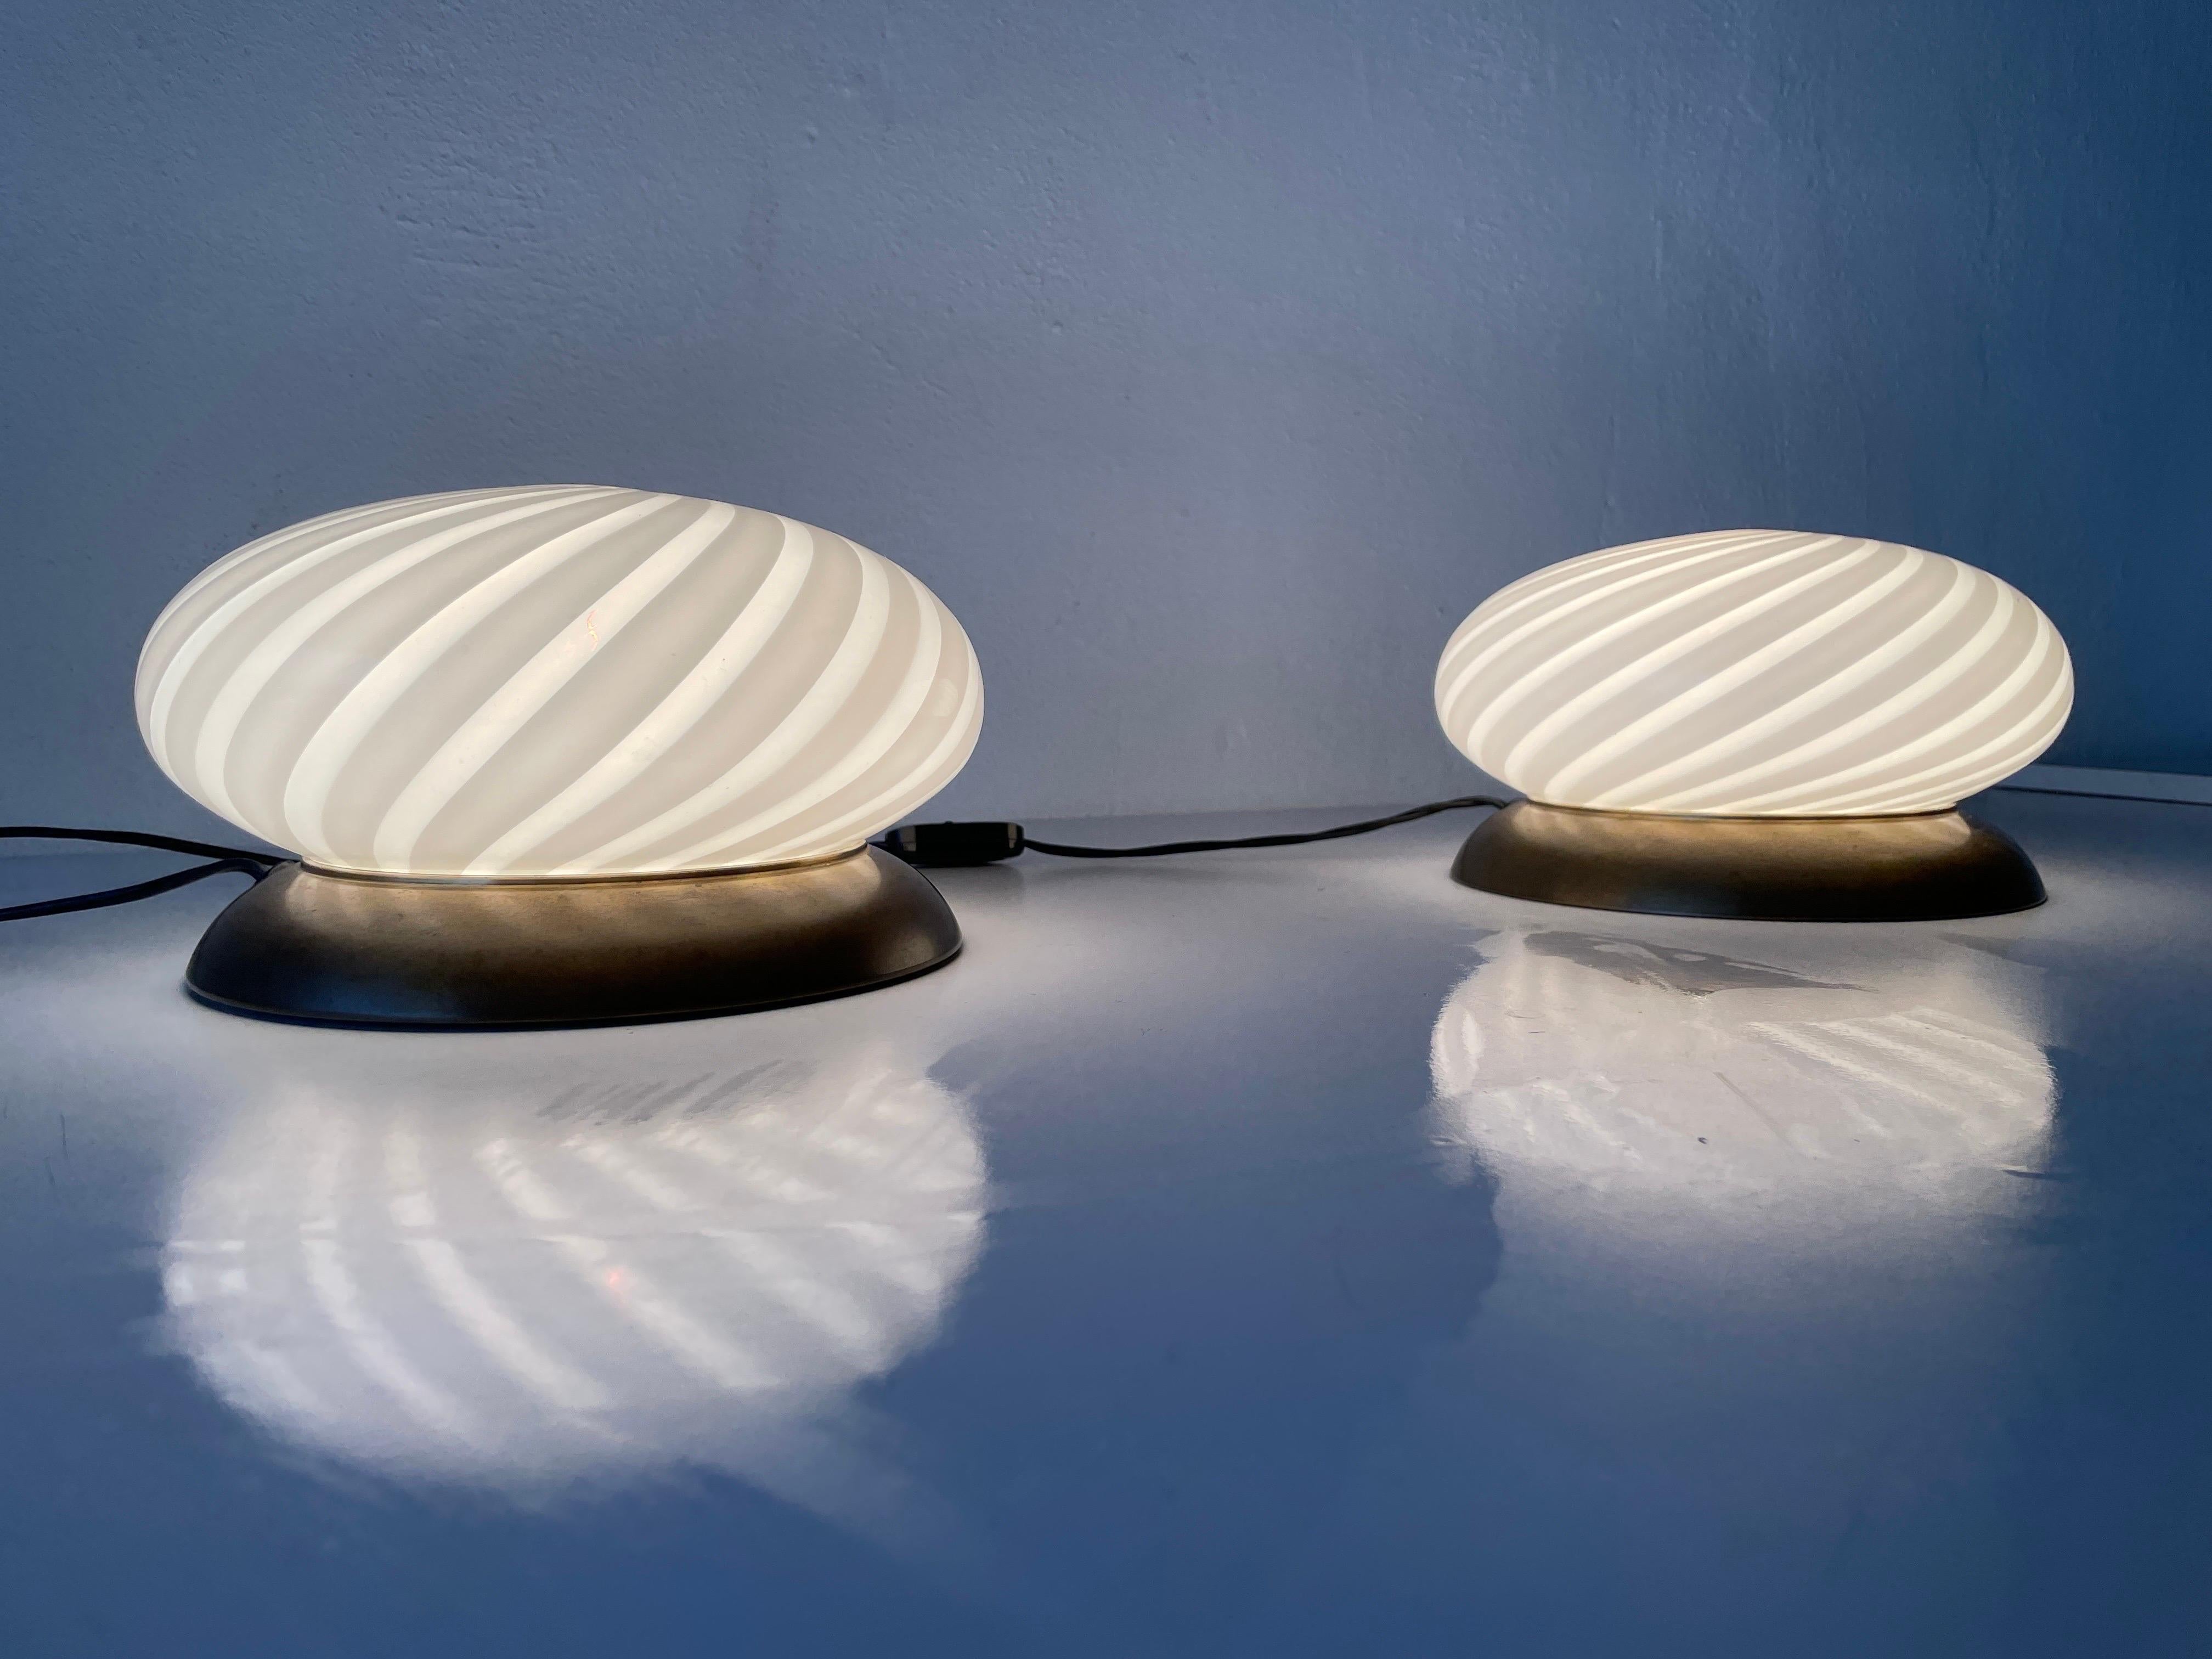 Pair of Table Lamps by Milano-Industria Lampadari Lamter, 1950s, Italy For Sale 2